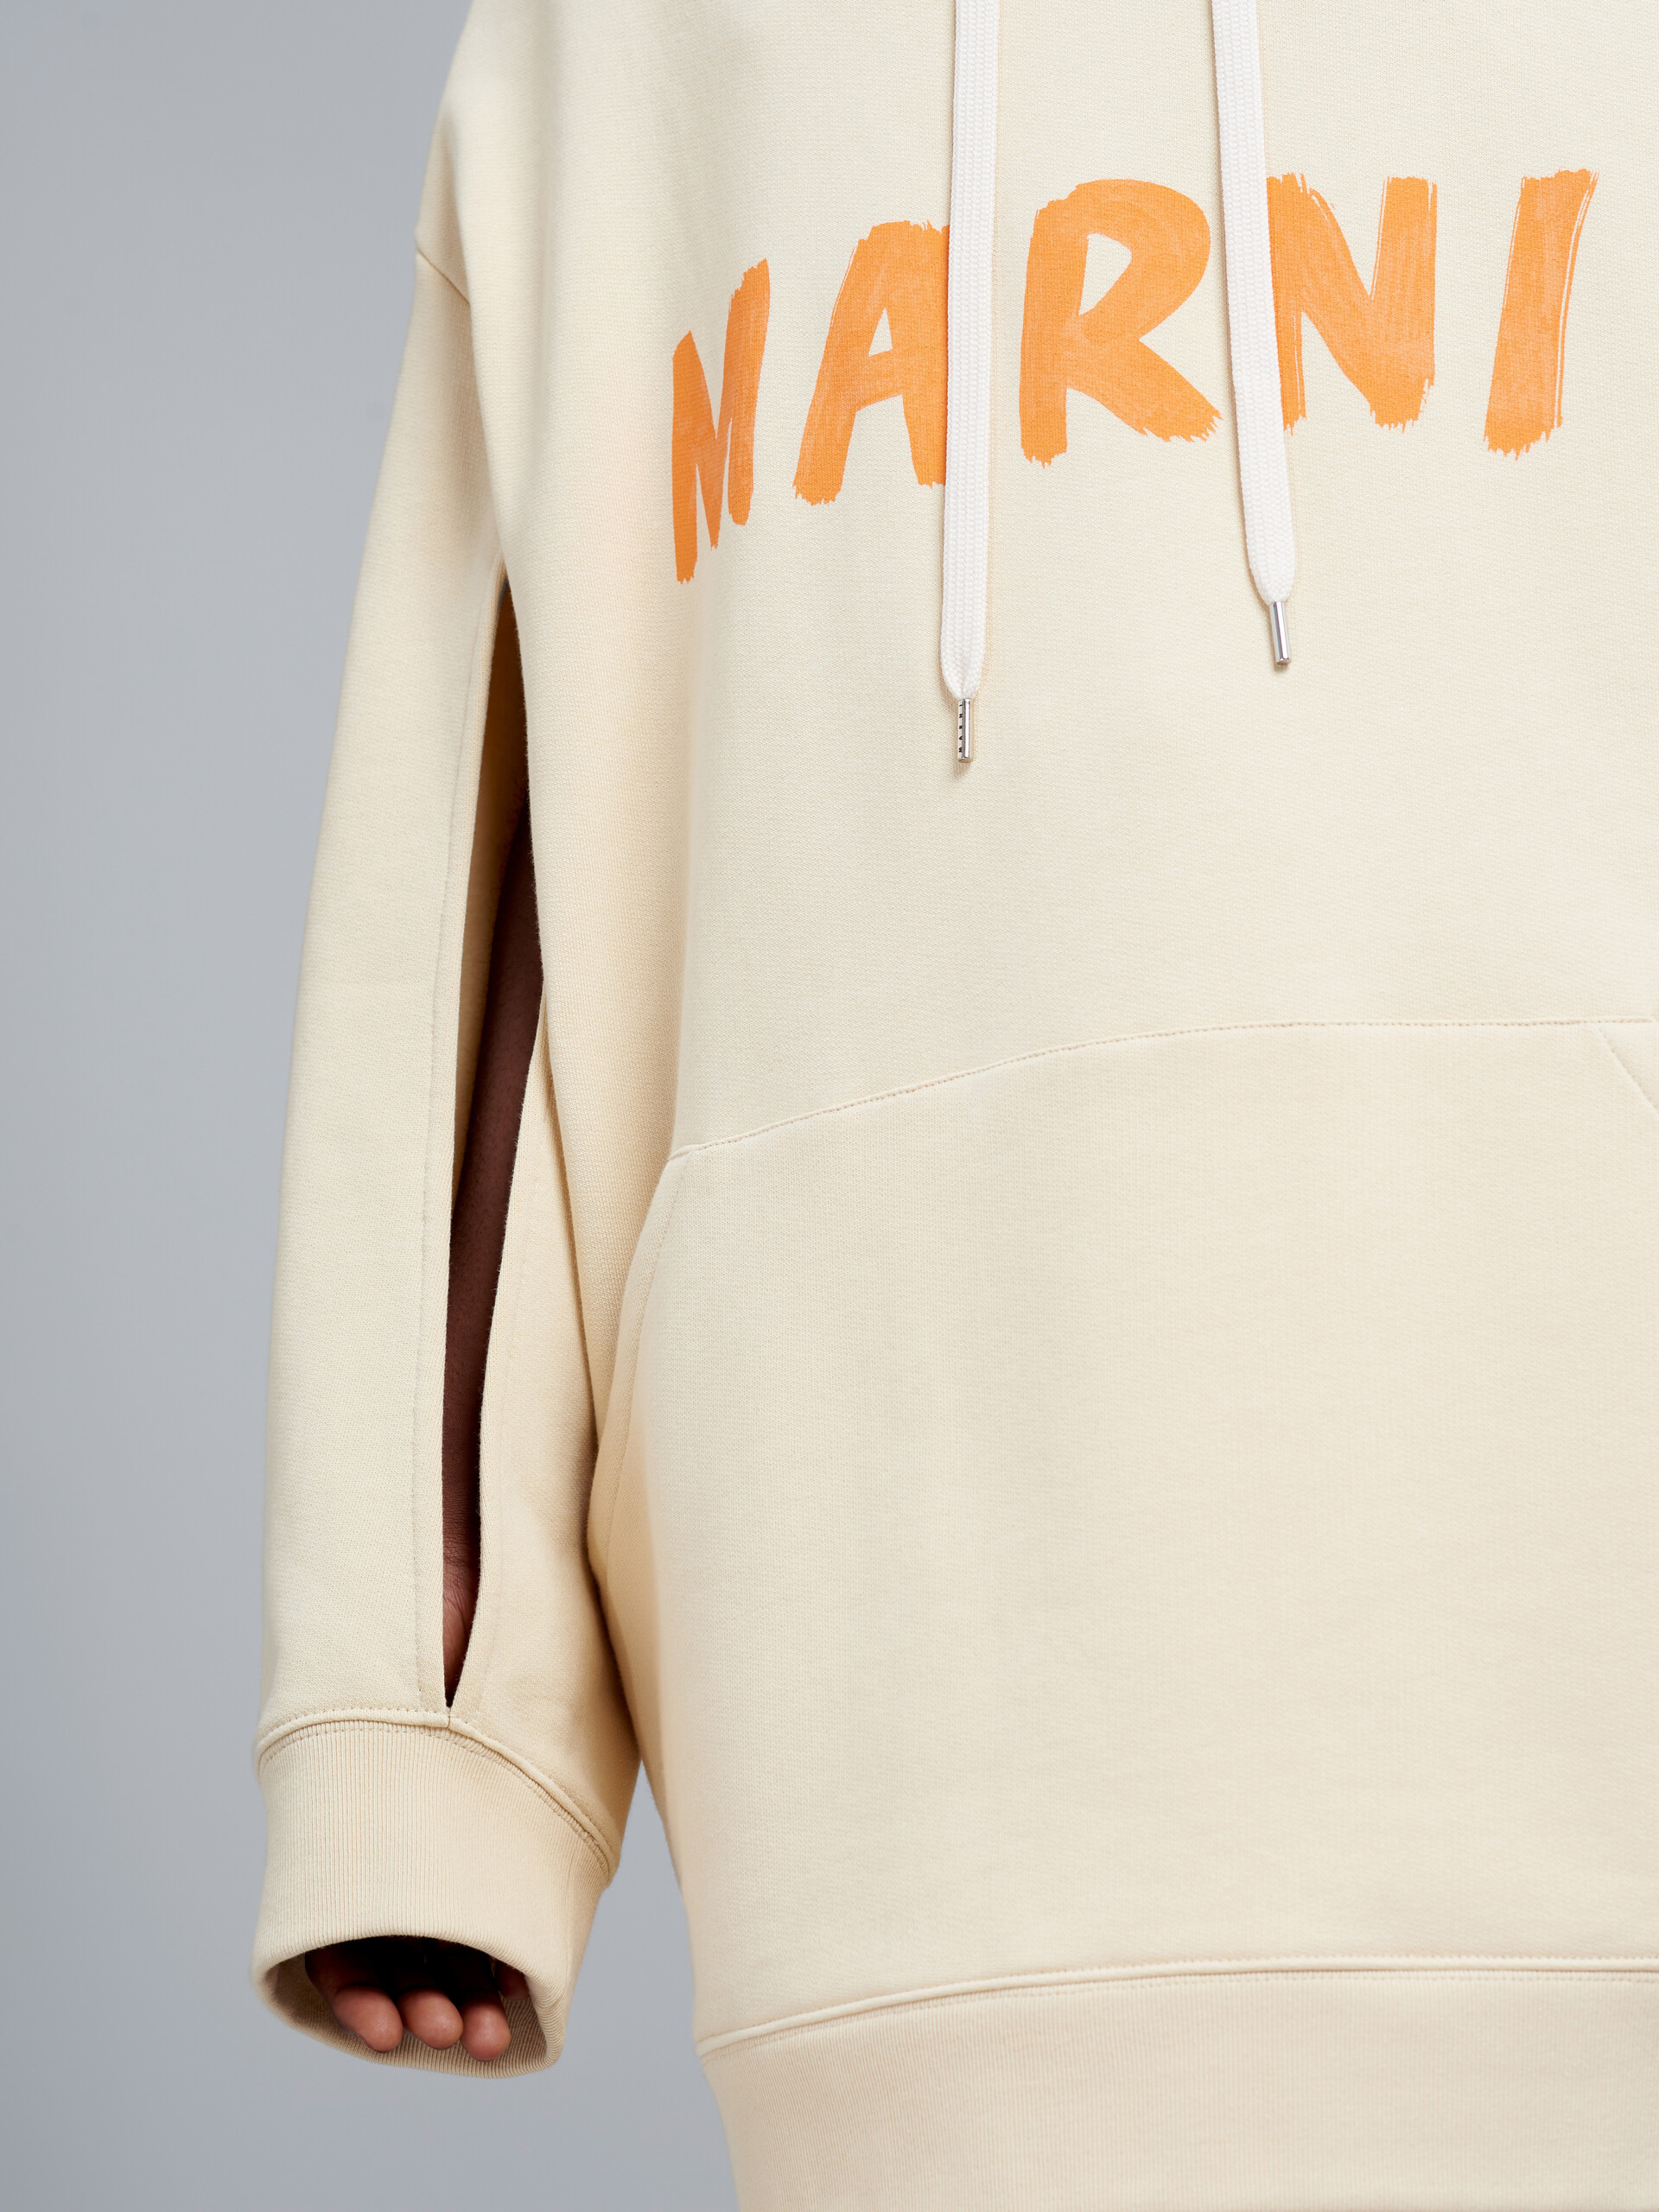 Marniのレタリング入りオーガニックコットン製スウェットシャツ - プルオーバー - Image 4